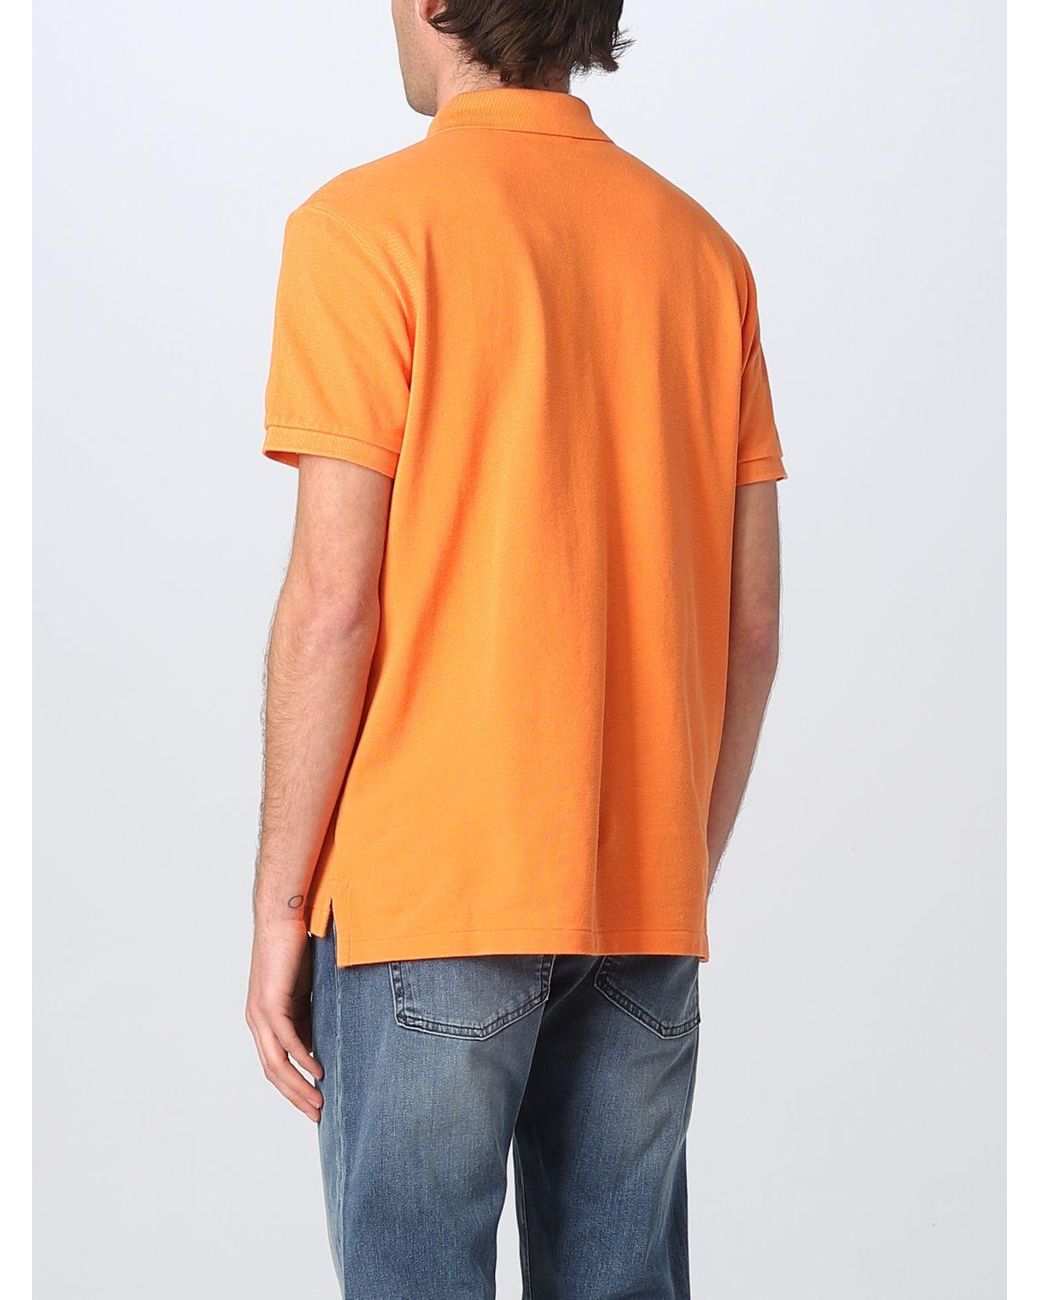 Actualizar 94+ imagen burnt orange ralph lauren polo shirt - Abzlocal.mx